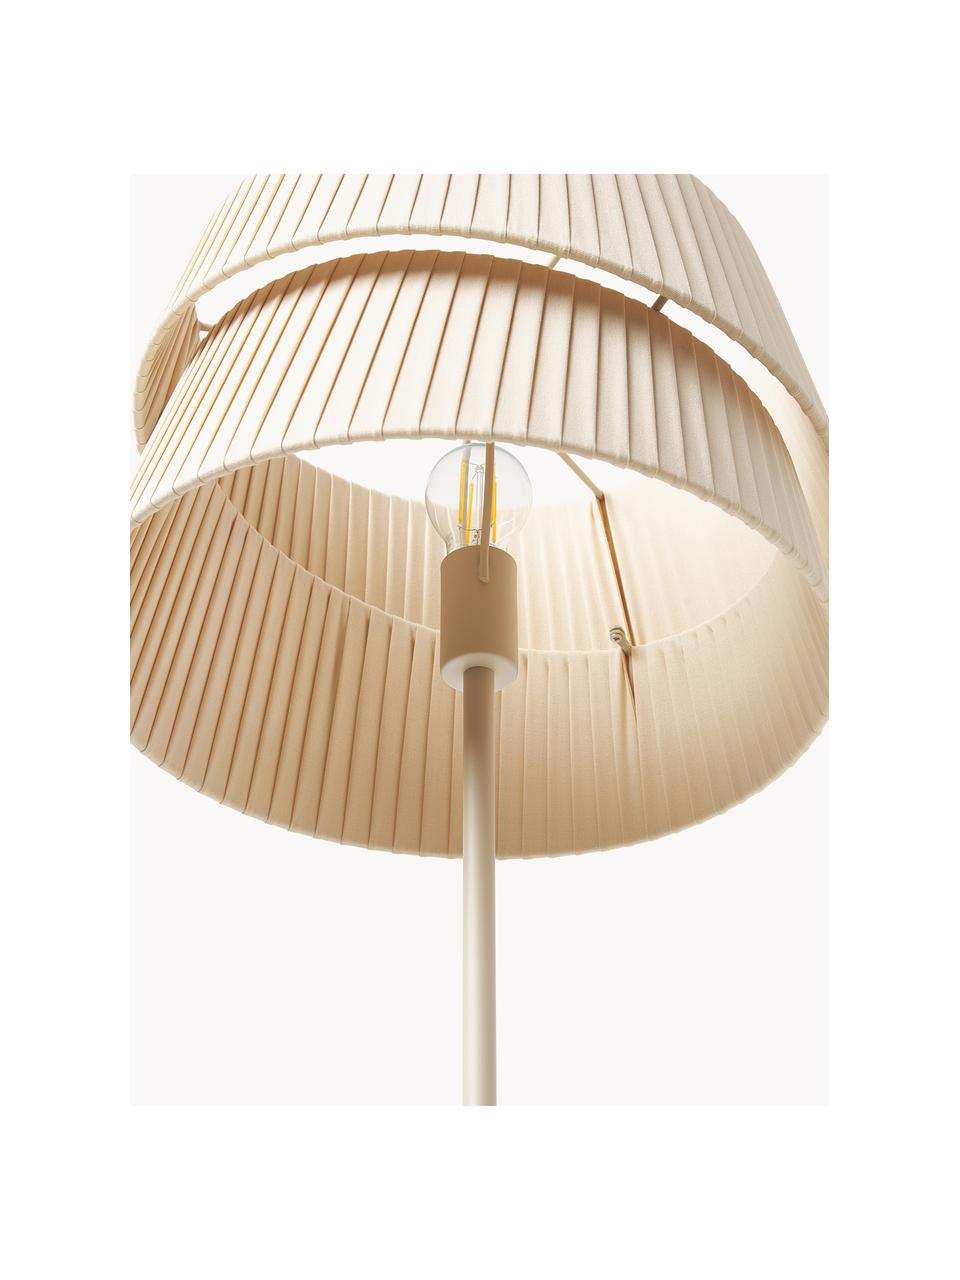 Vloerlamp Nyla met asymmetrische lampenkap, Lampenkap: linnen, Beige, H 160 cm